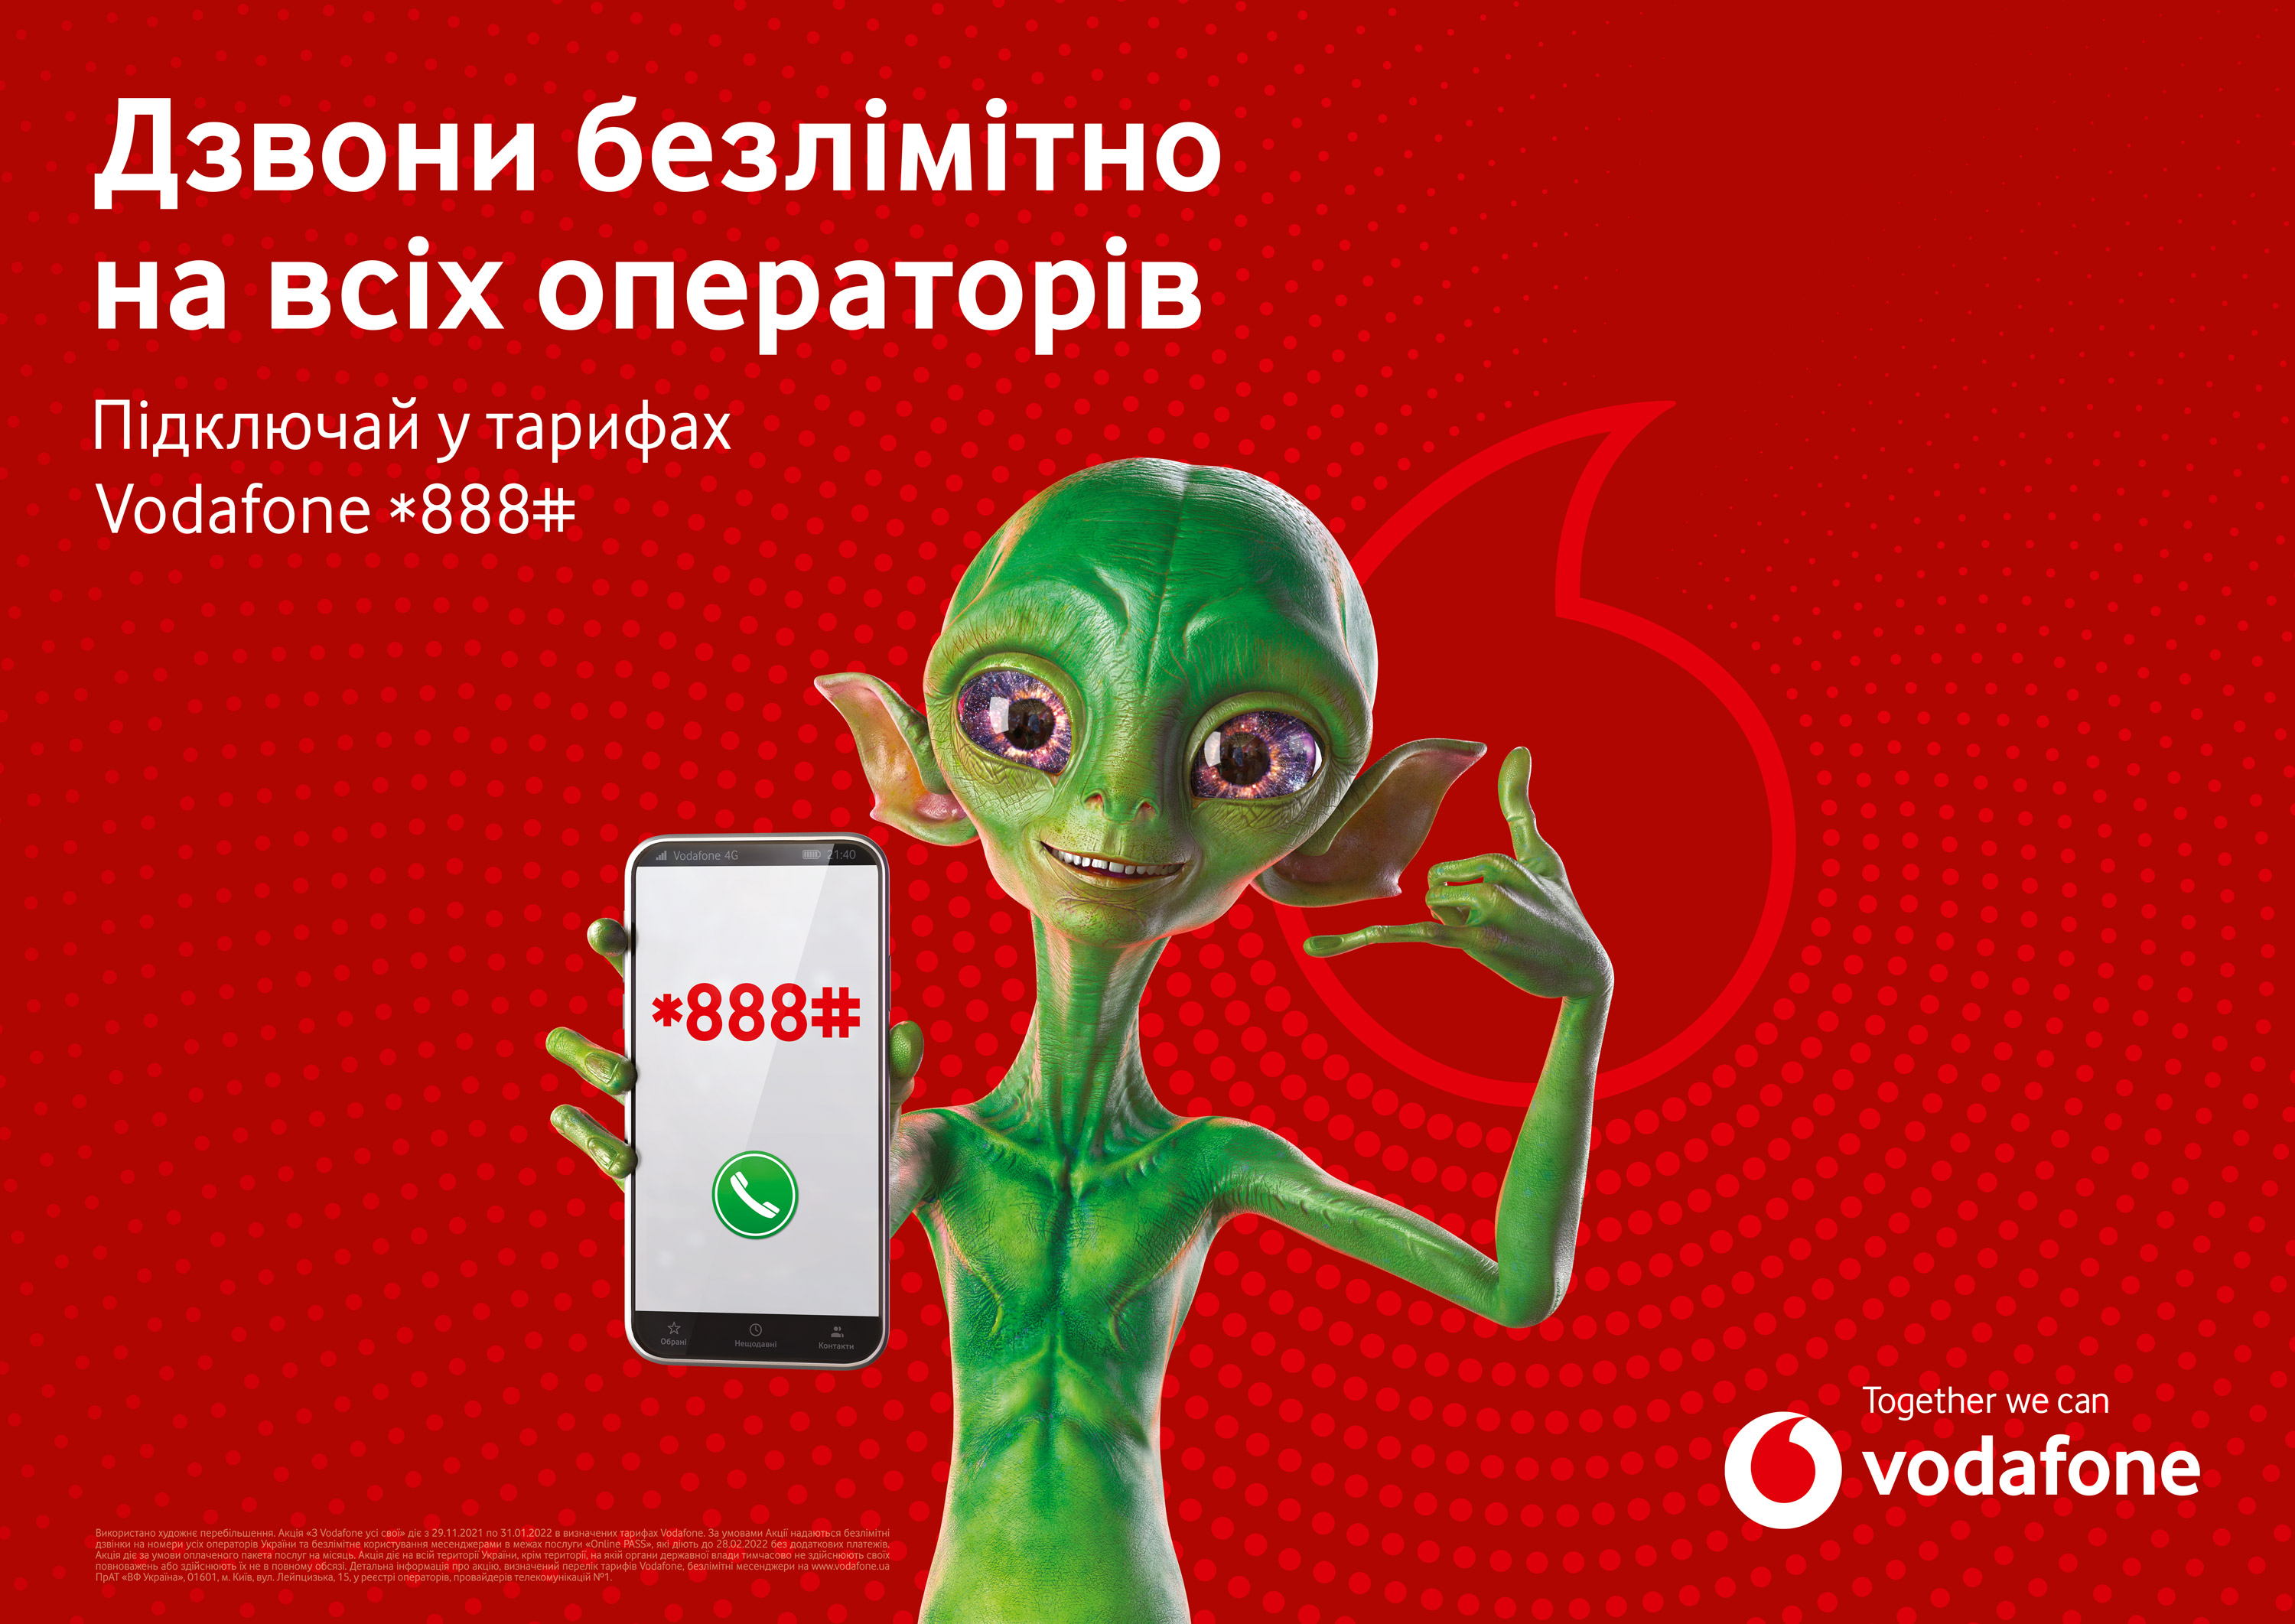 Vodafone тимчасово скасовує ліміти на дзвінки іншим операторам та повідомлення в месенджерах